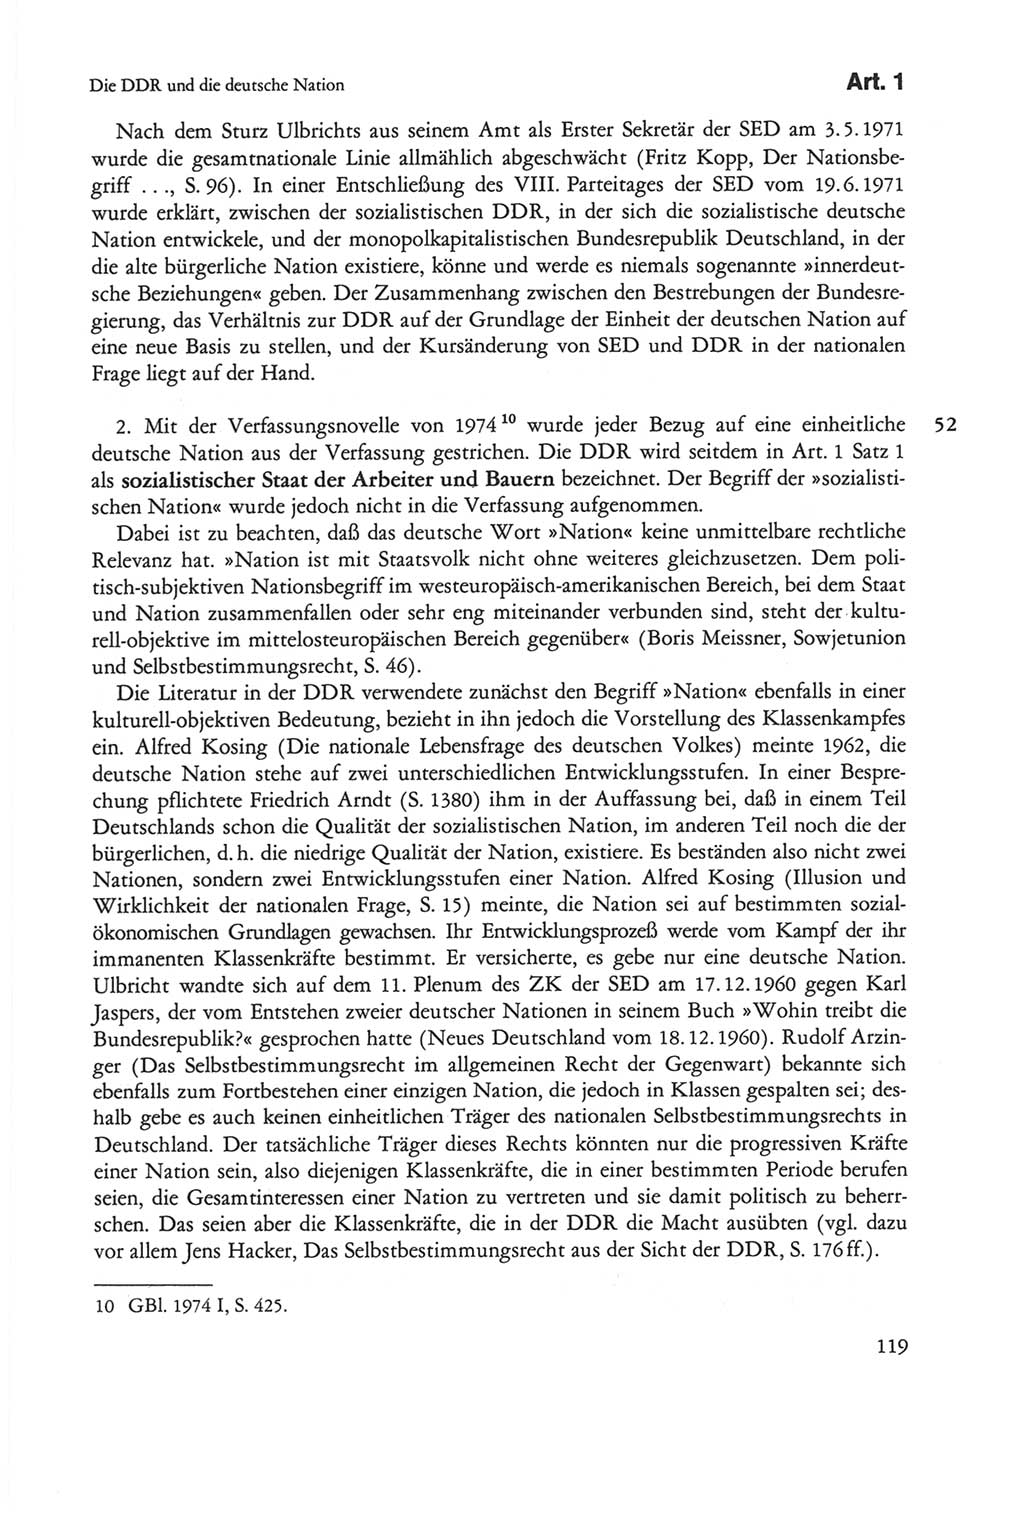 Die sozialistische Verfassung der Deutschen Demokratischen Republik (DDR), Kommentar mit einem Nachtrag 1997, Seite 119 (Soz. Verf. DDR Komm. Nachtr. 1997, S. 119)